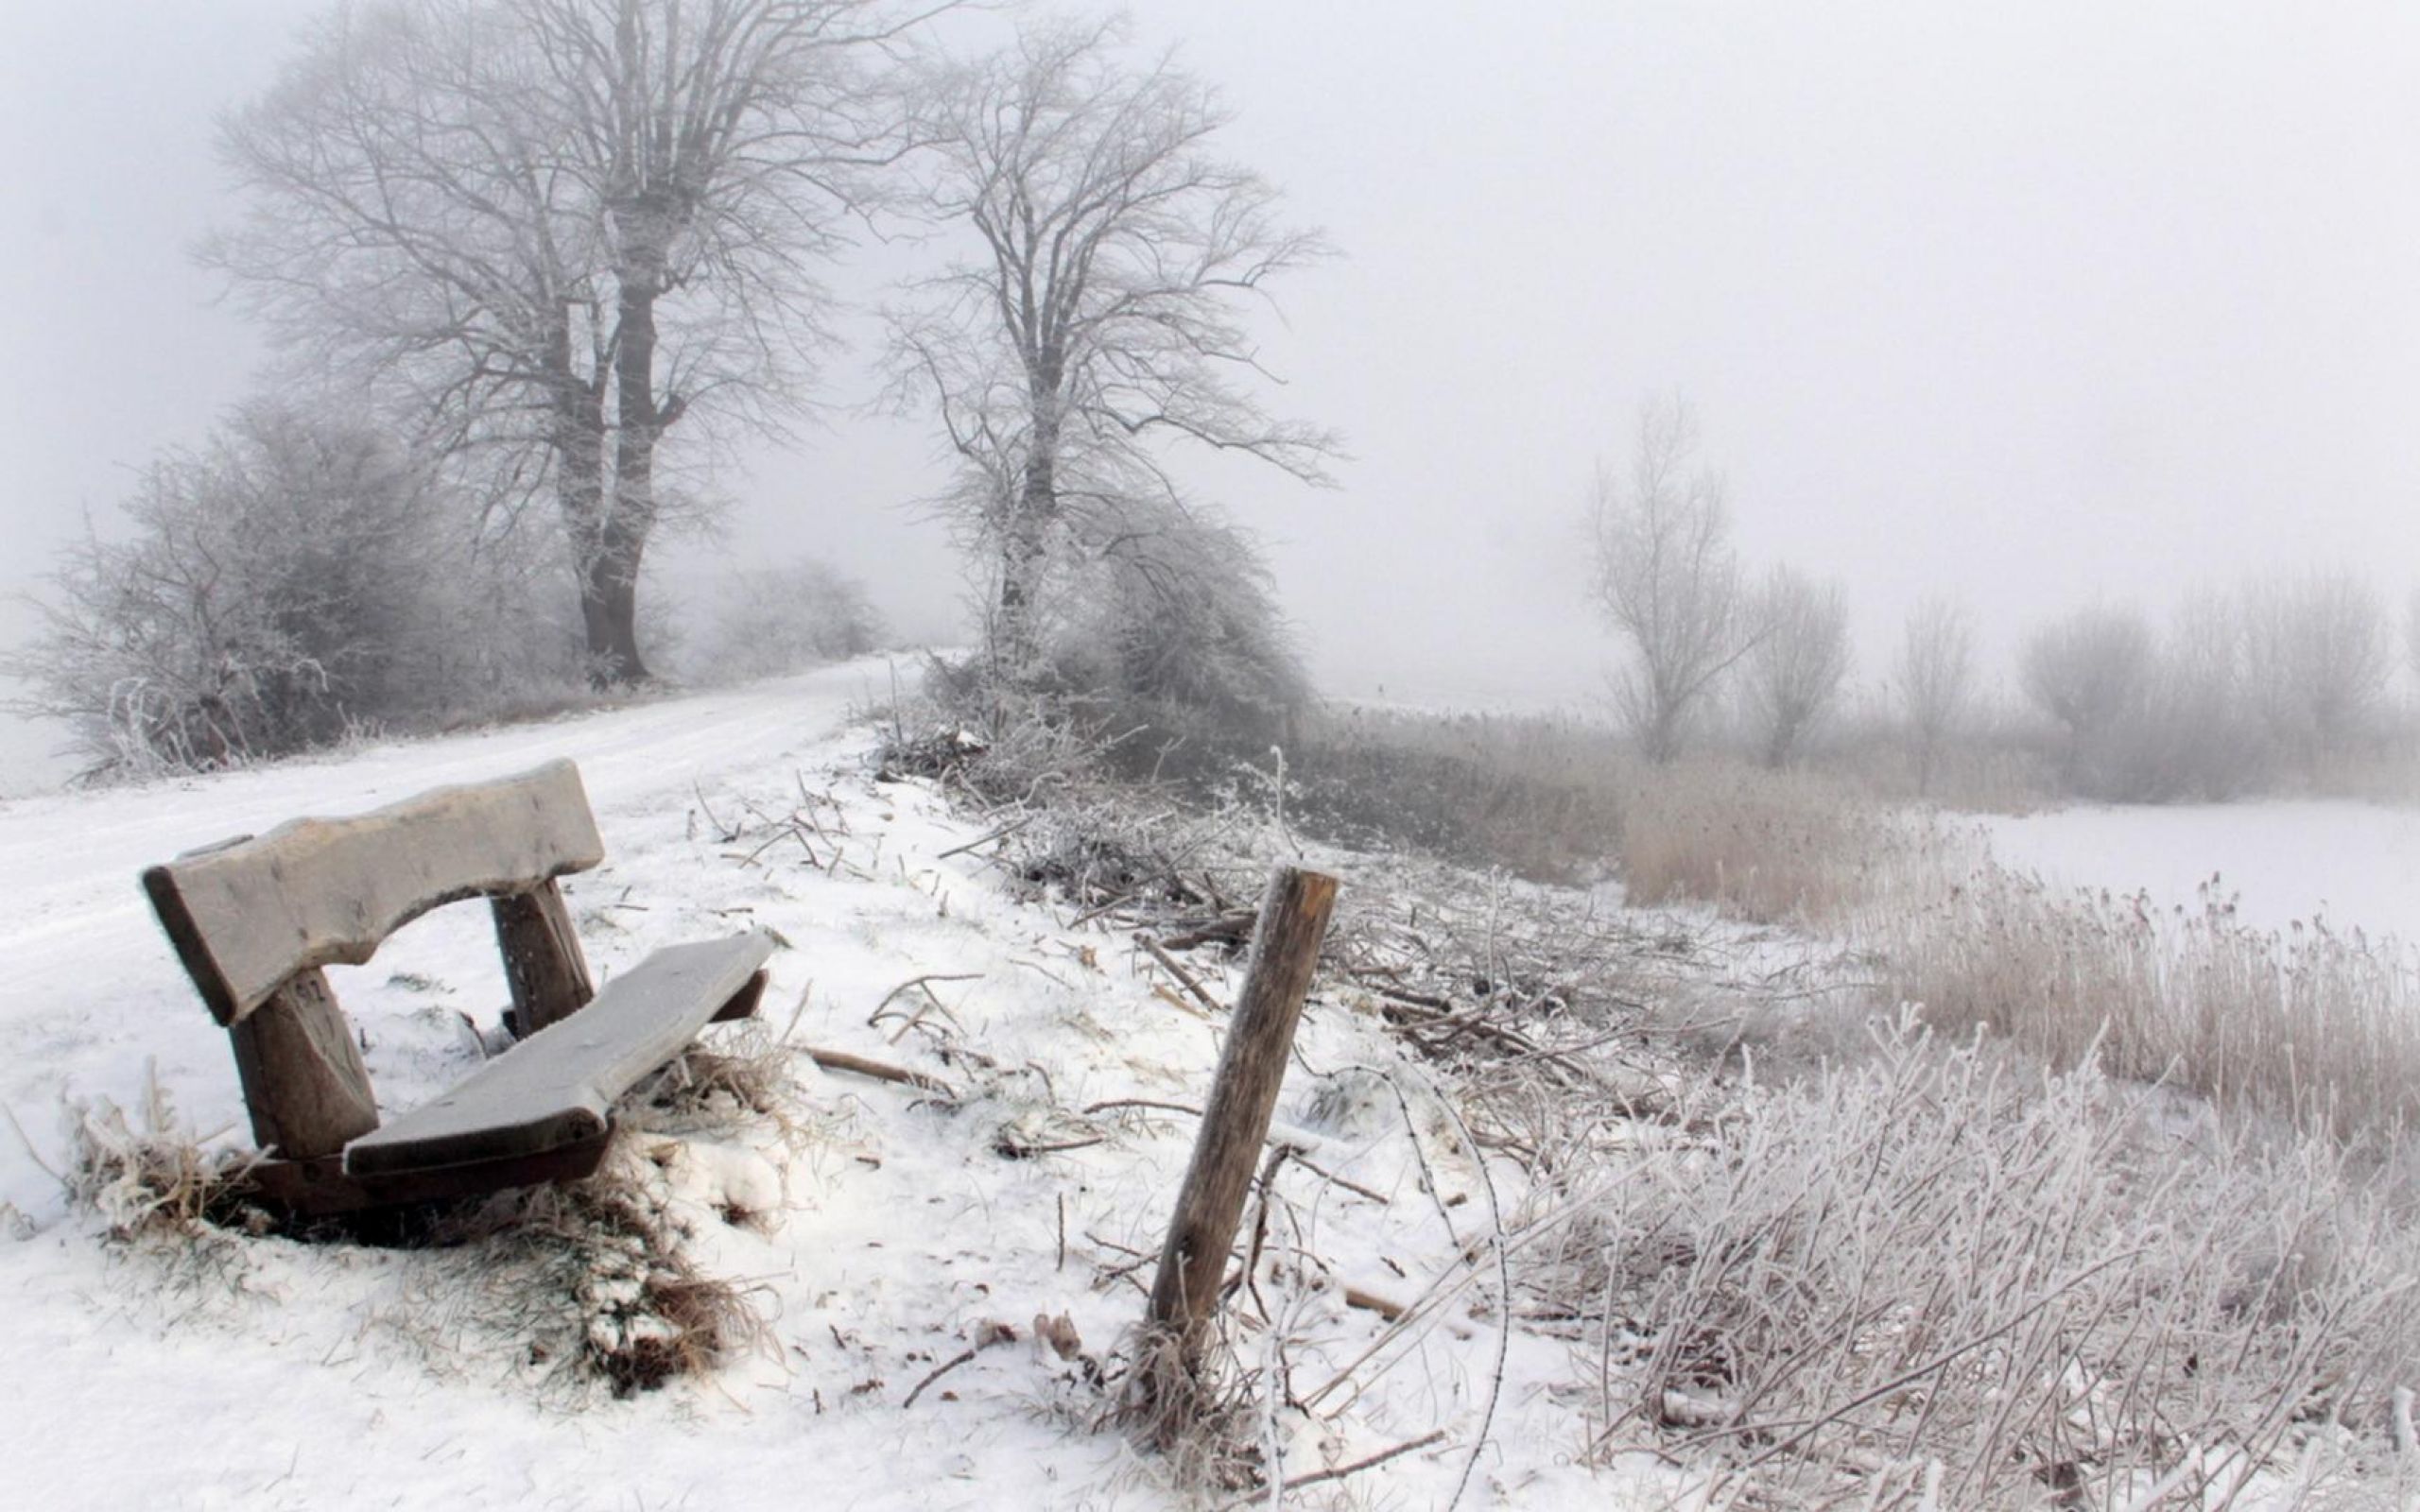 Снежок на дорогу падает. Запорошило снегом. Зимний туман в деревне. Метель в деревне. Скучная зима.